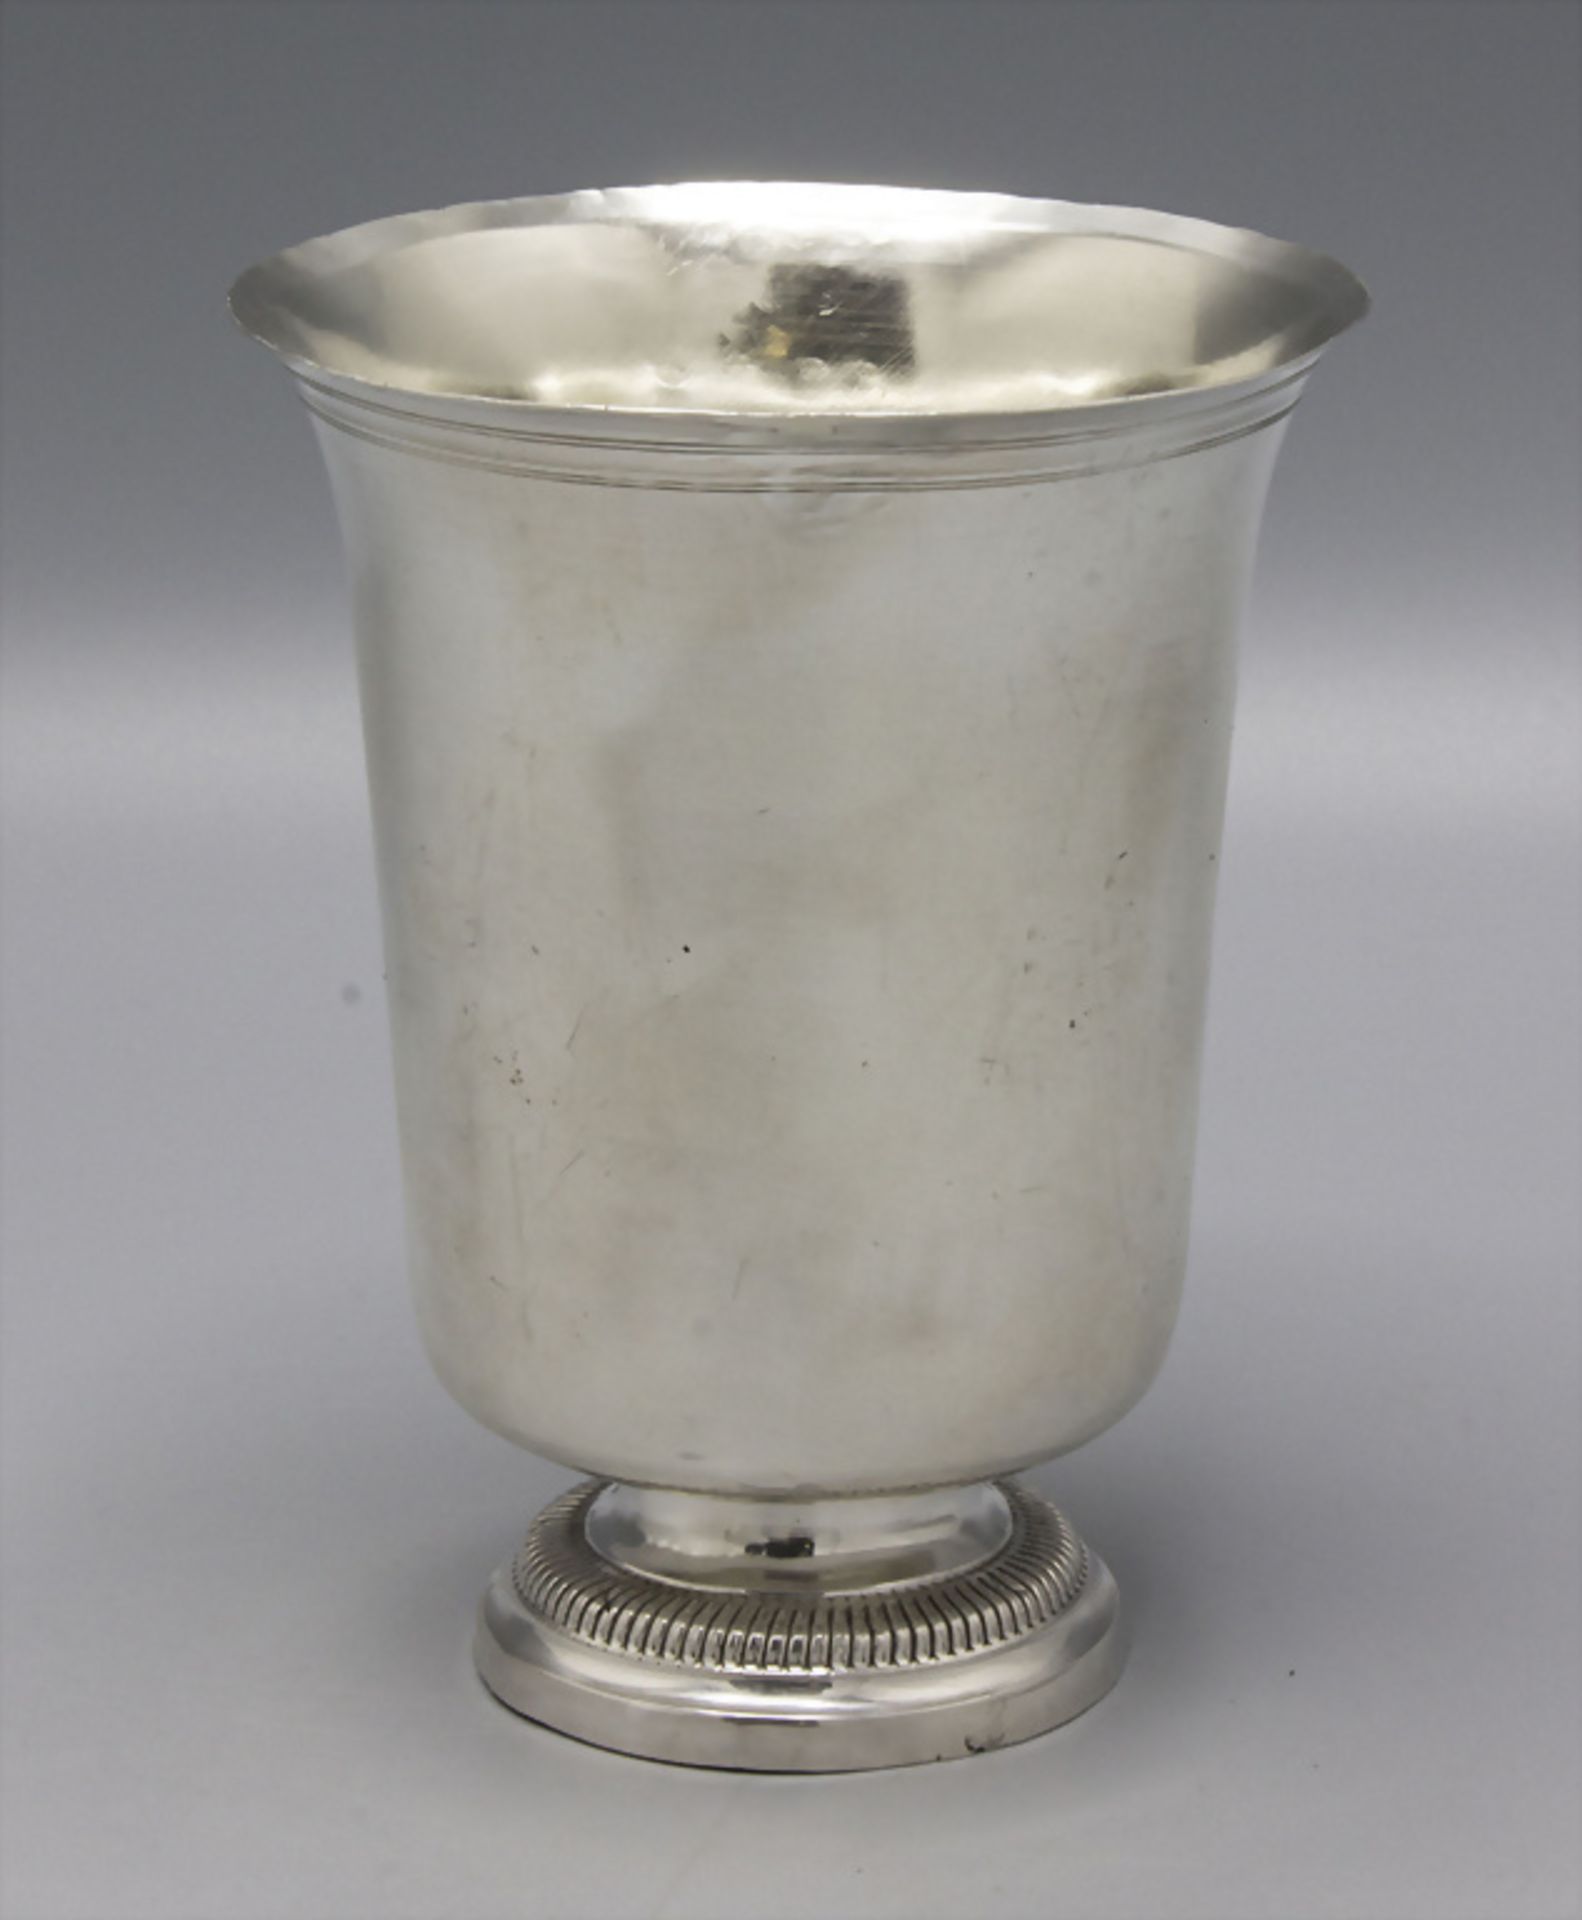 Glockenbecher / A bell shaped silver beaker, Avignon, 1803-1809 - Image 2 of 8